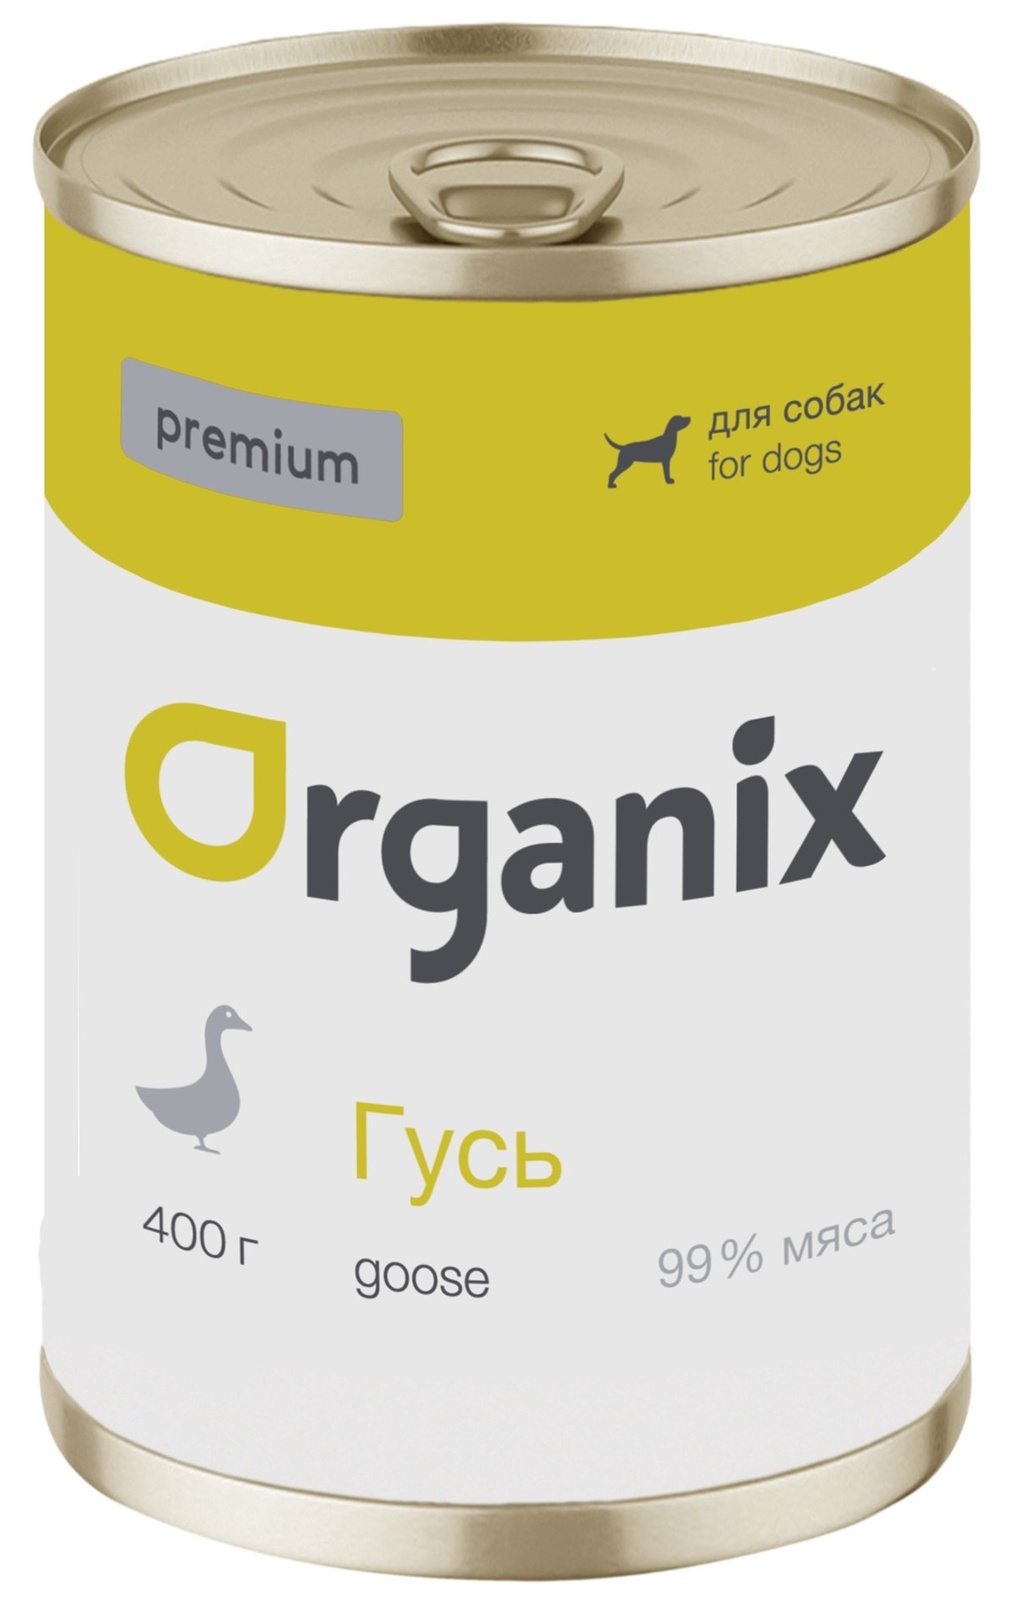 Organix консервы Organix монобелковые премиум консервы для собак, с гусем (400 г) organix консервы organix консервы для собак ягненок с рубцом и морковью 400 г